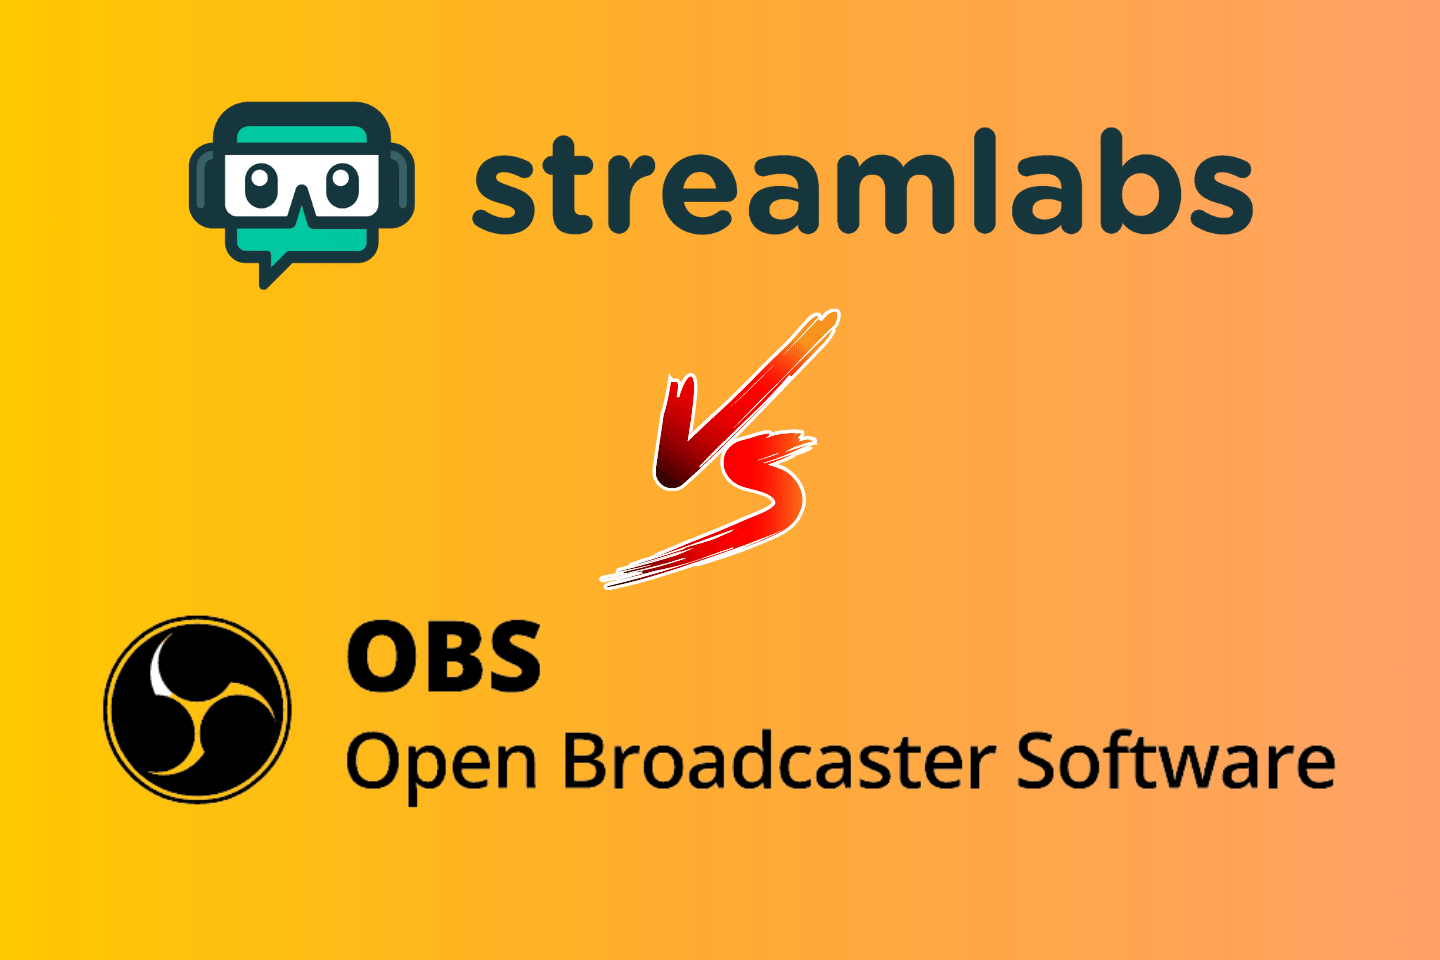 obs live vs obs